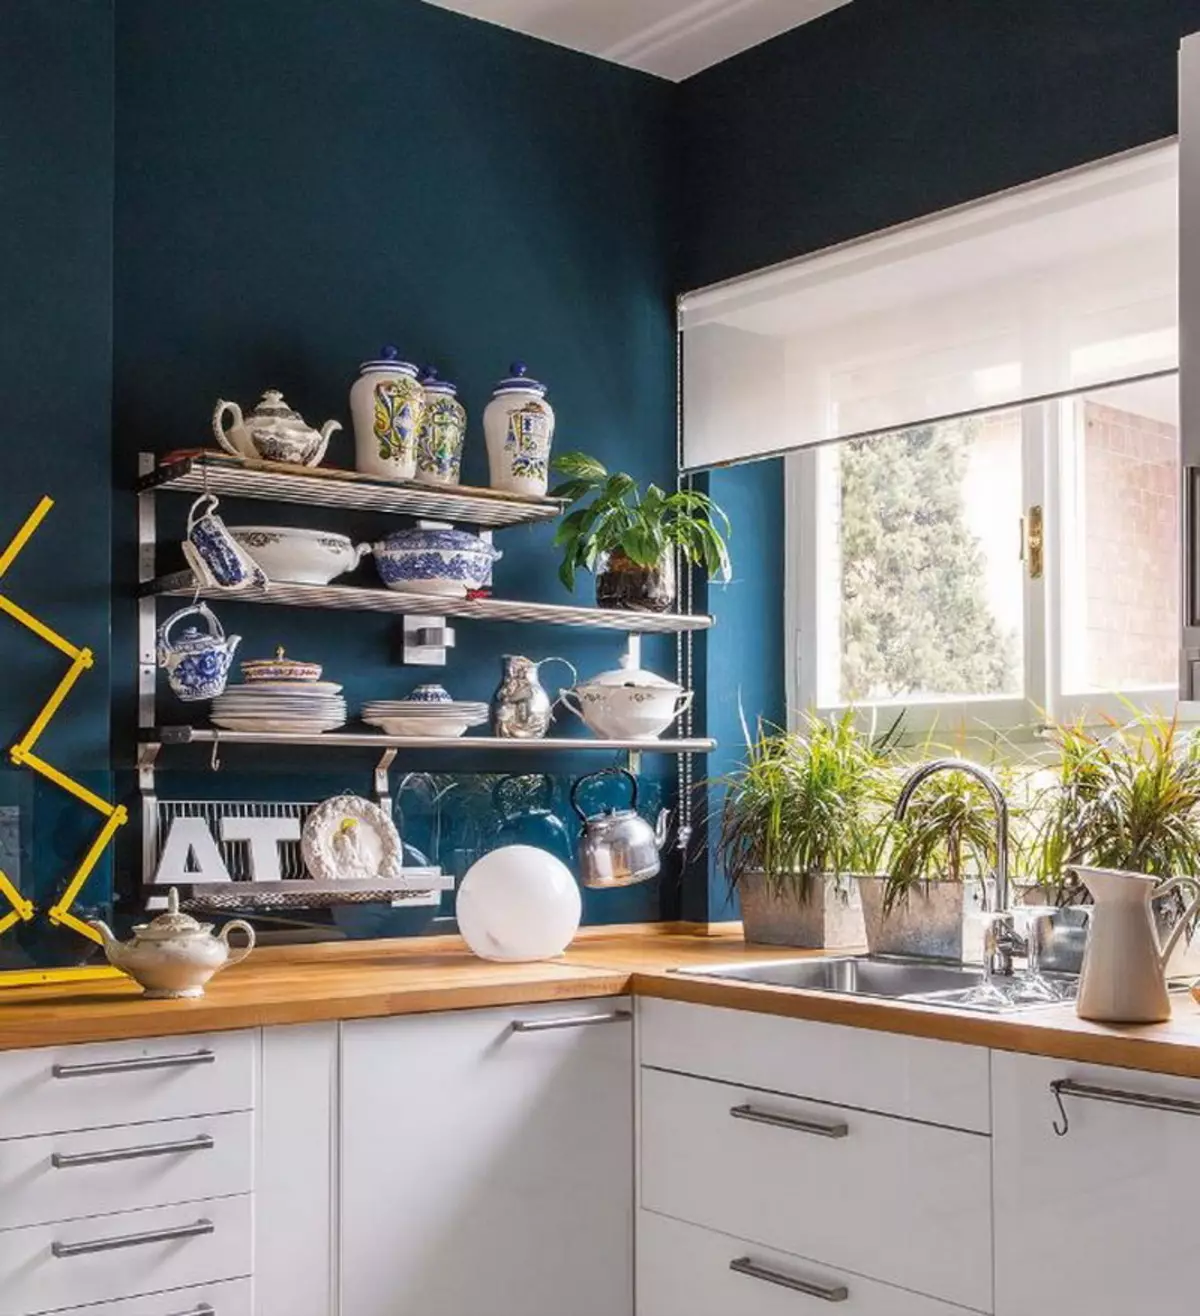 Cucina bianca-blu (64 foto): Caratteristiche dell'auricolare della cucina in colore bianco-blu per la cucina Interior design, accenti sulle pareti in colori simili 9393_31